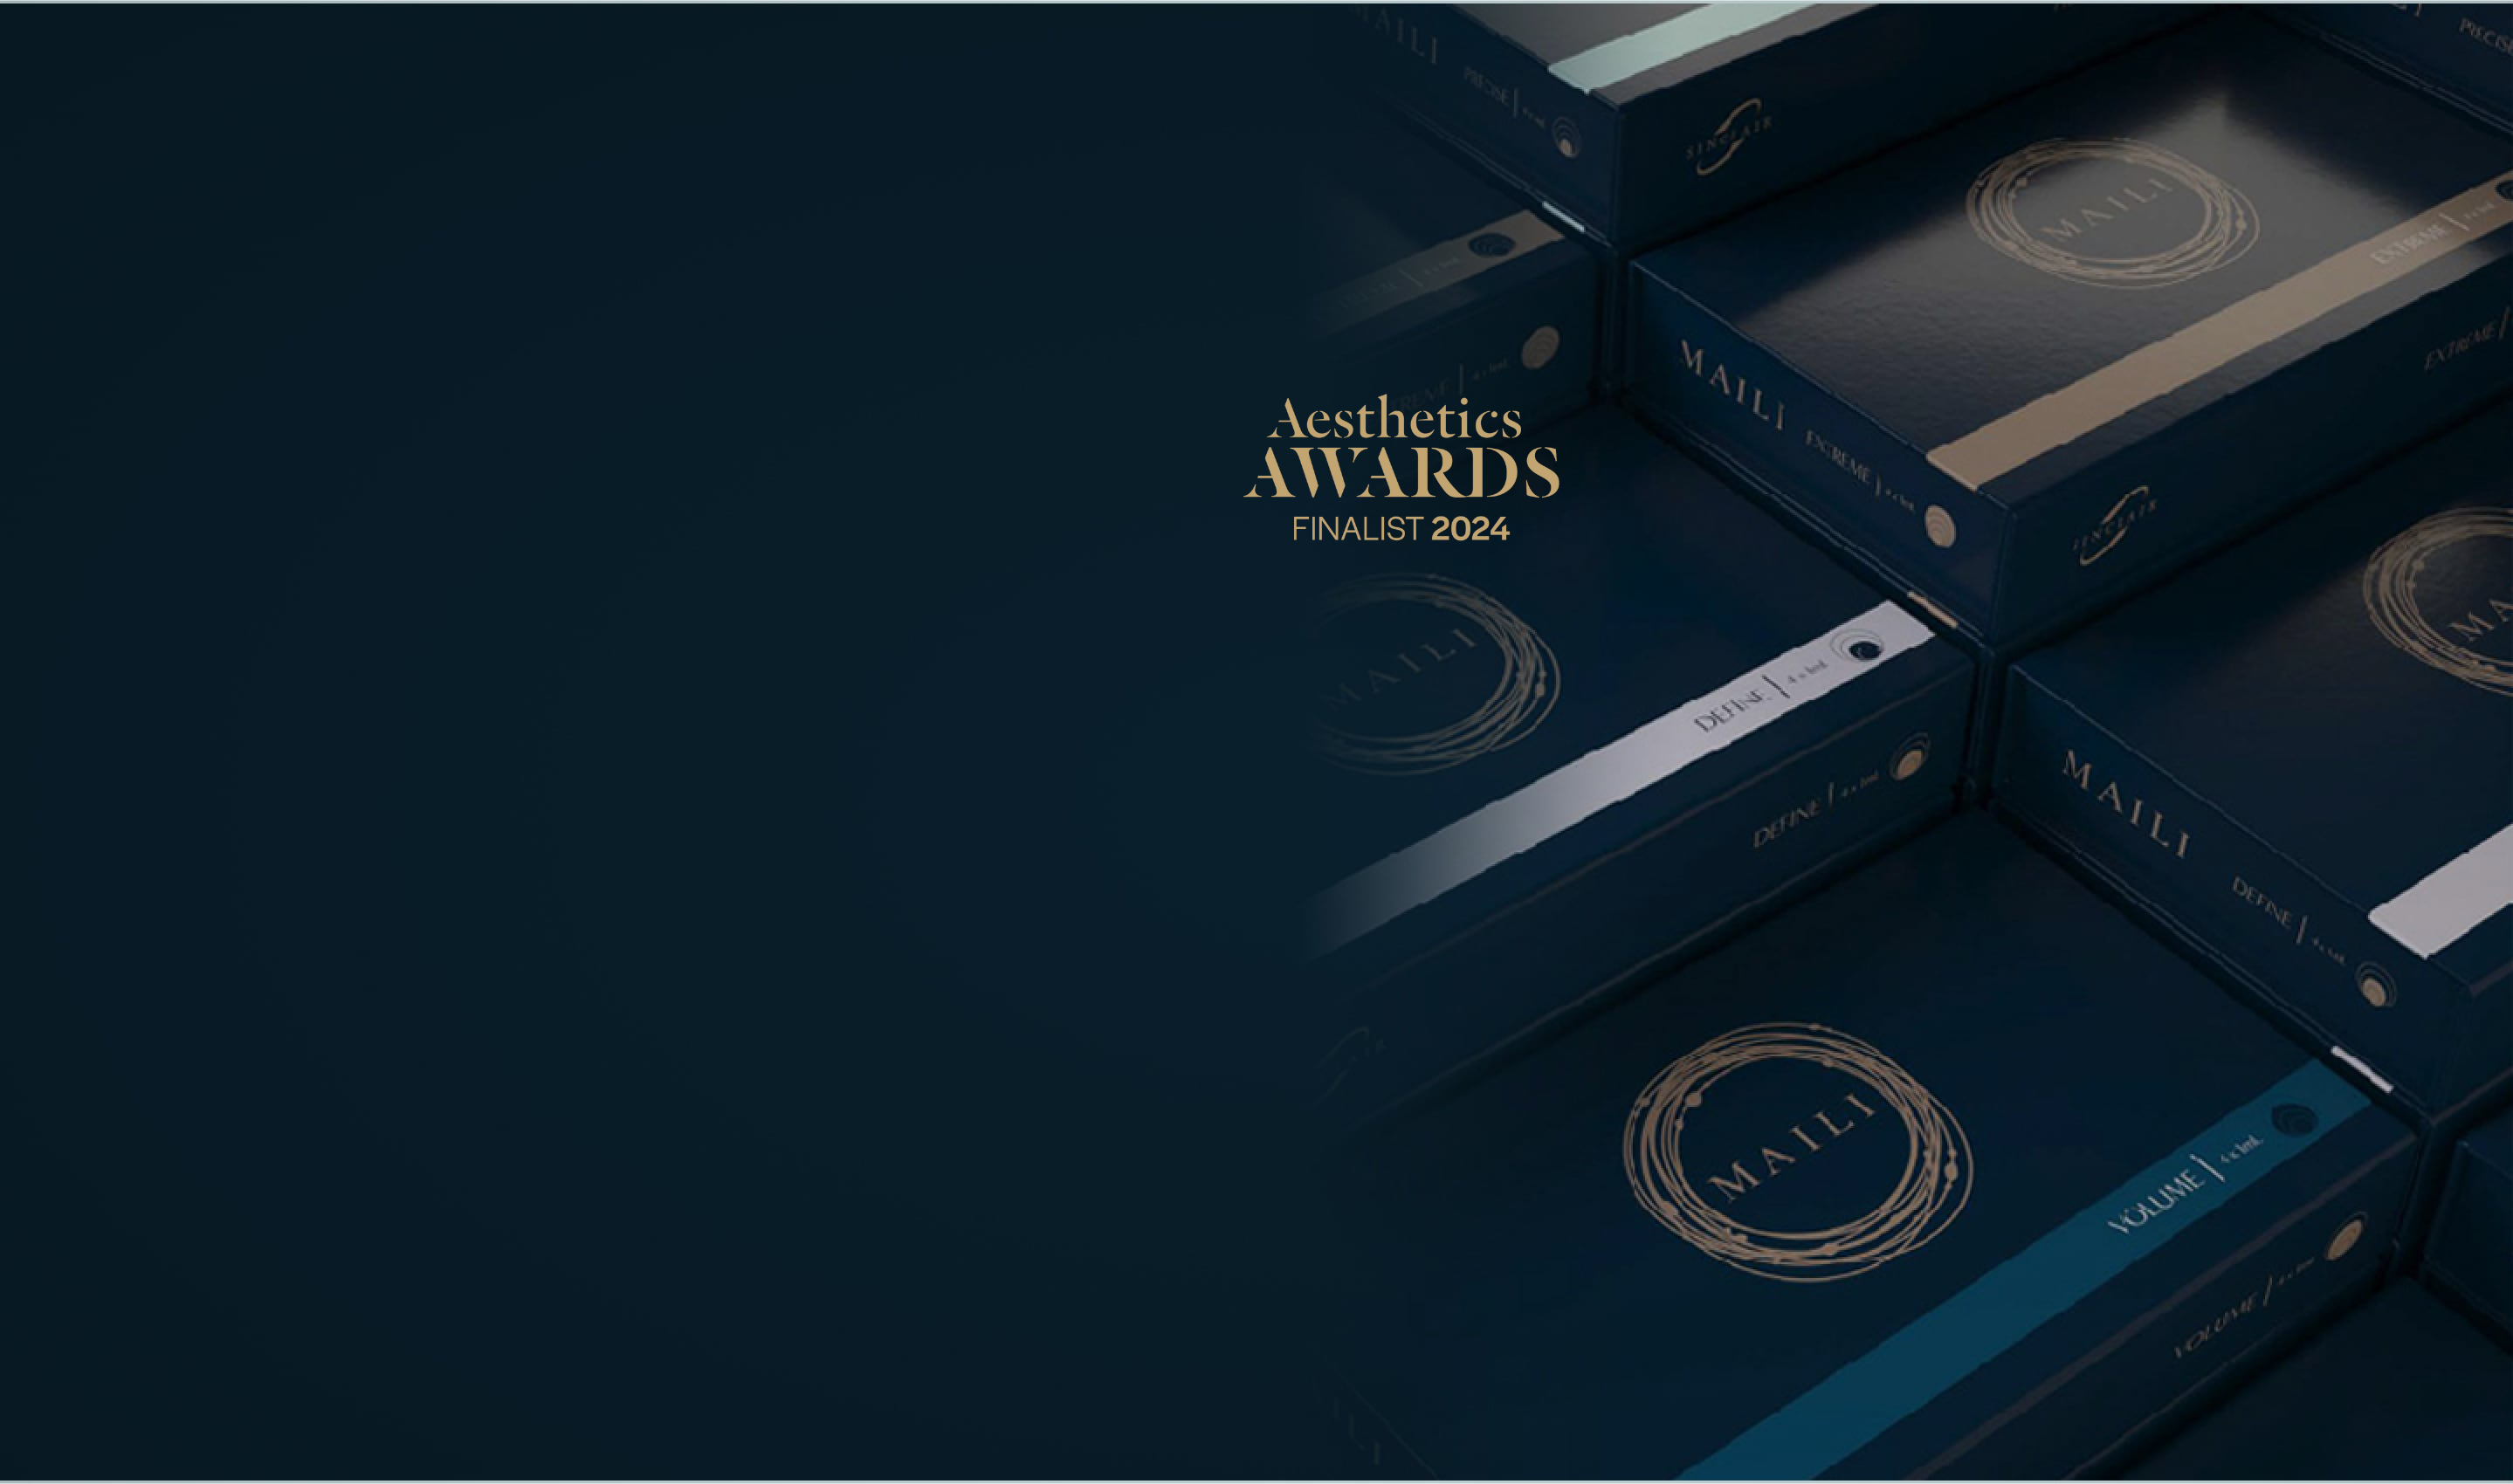 Maili Aesthetic Awards Of The Year (3)